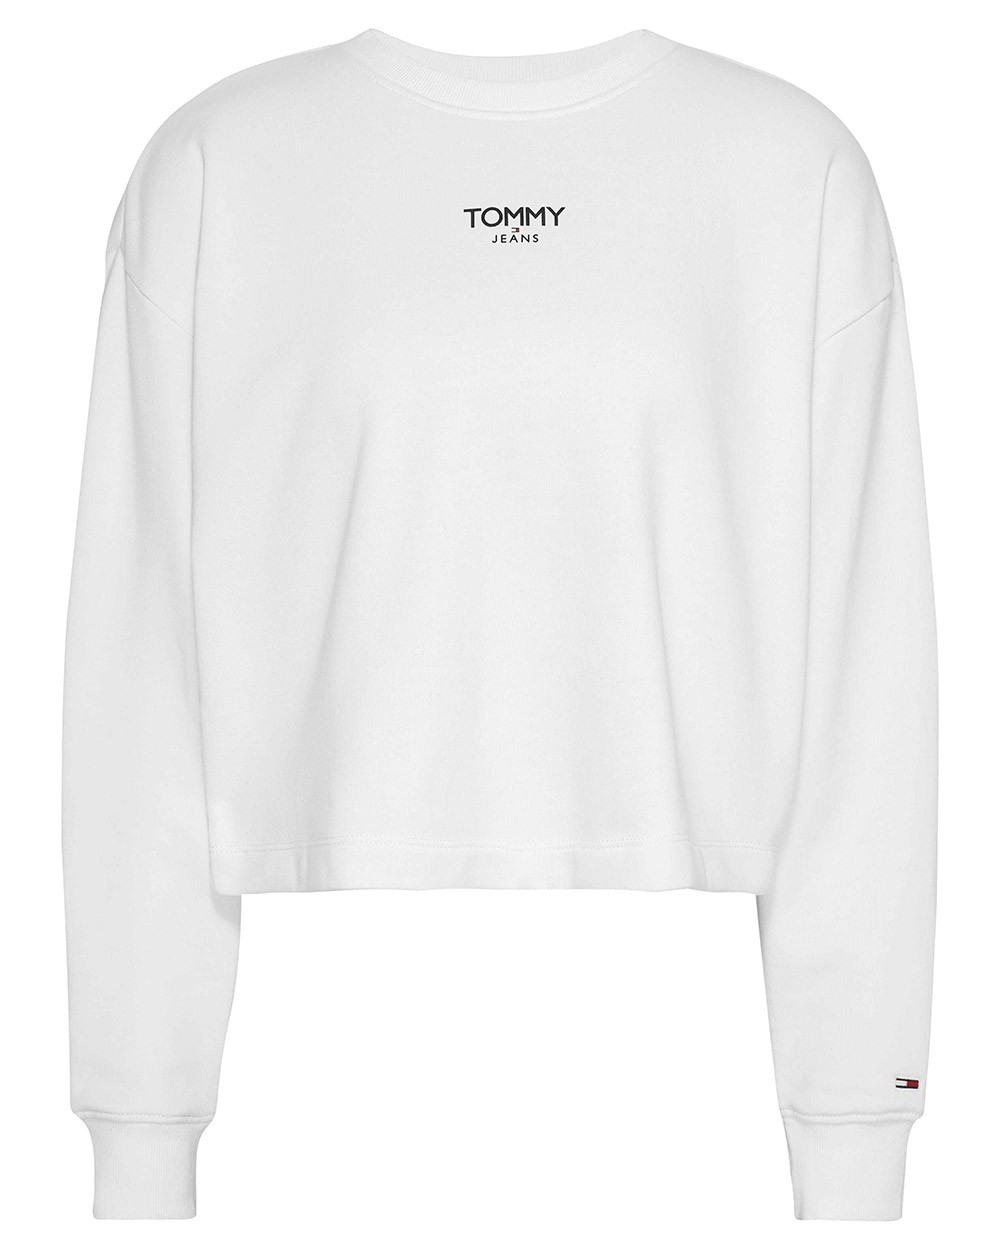 TOMMY HILFIGER - DW0DW16393 - Sweatshirt